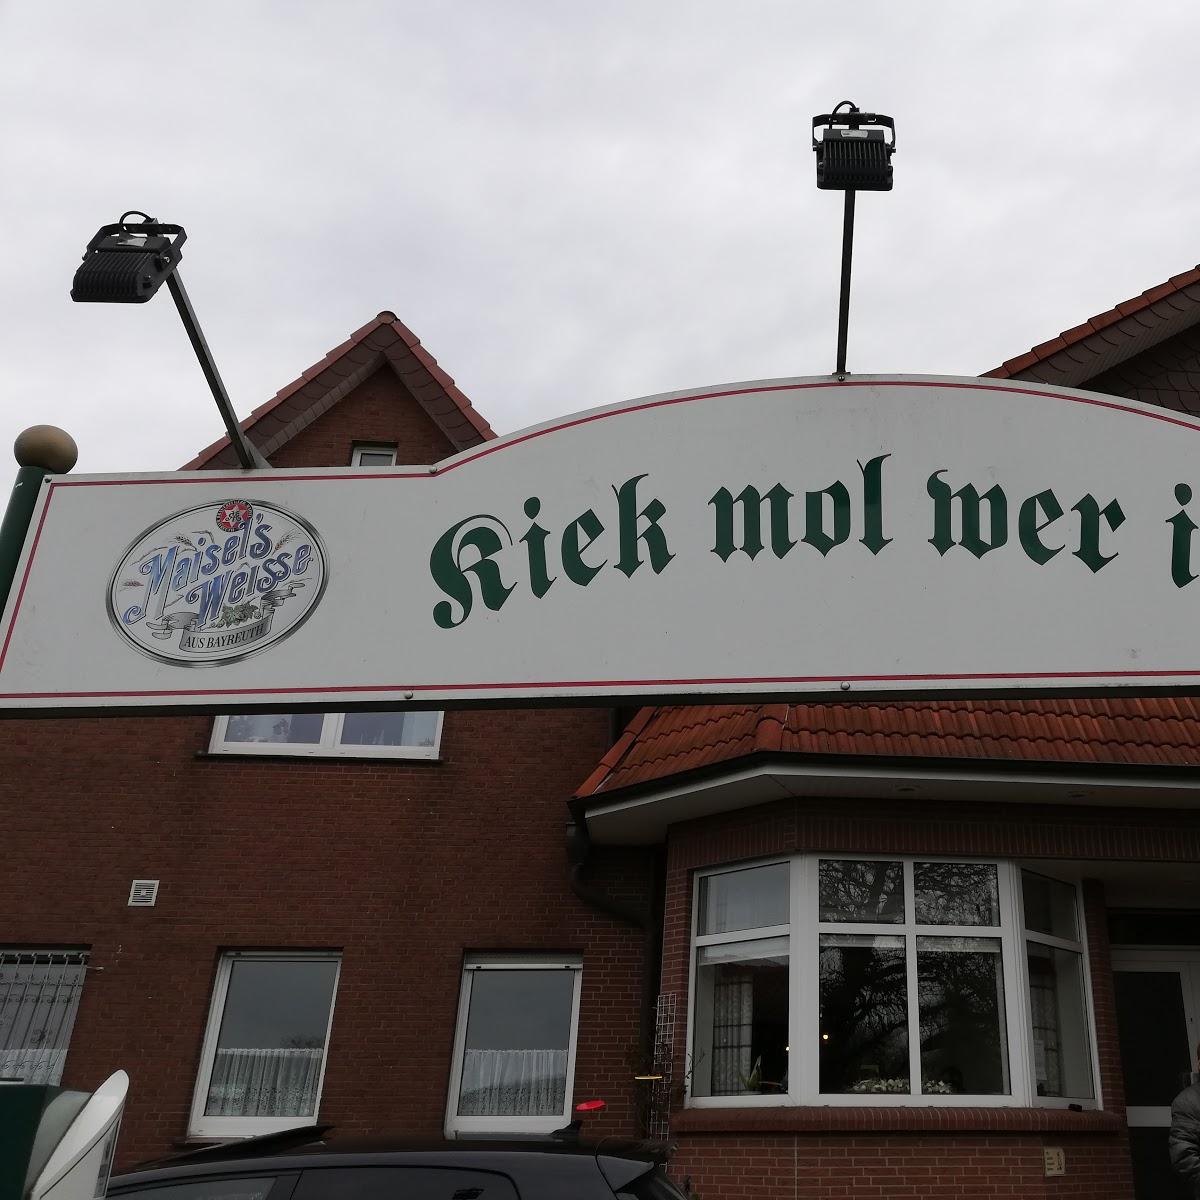 Restaurant "Zum Alten Kloster - Familie Nieporte Gasthaus u. Saalbetrieb in" in Wallenhorst